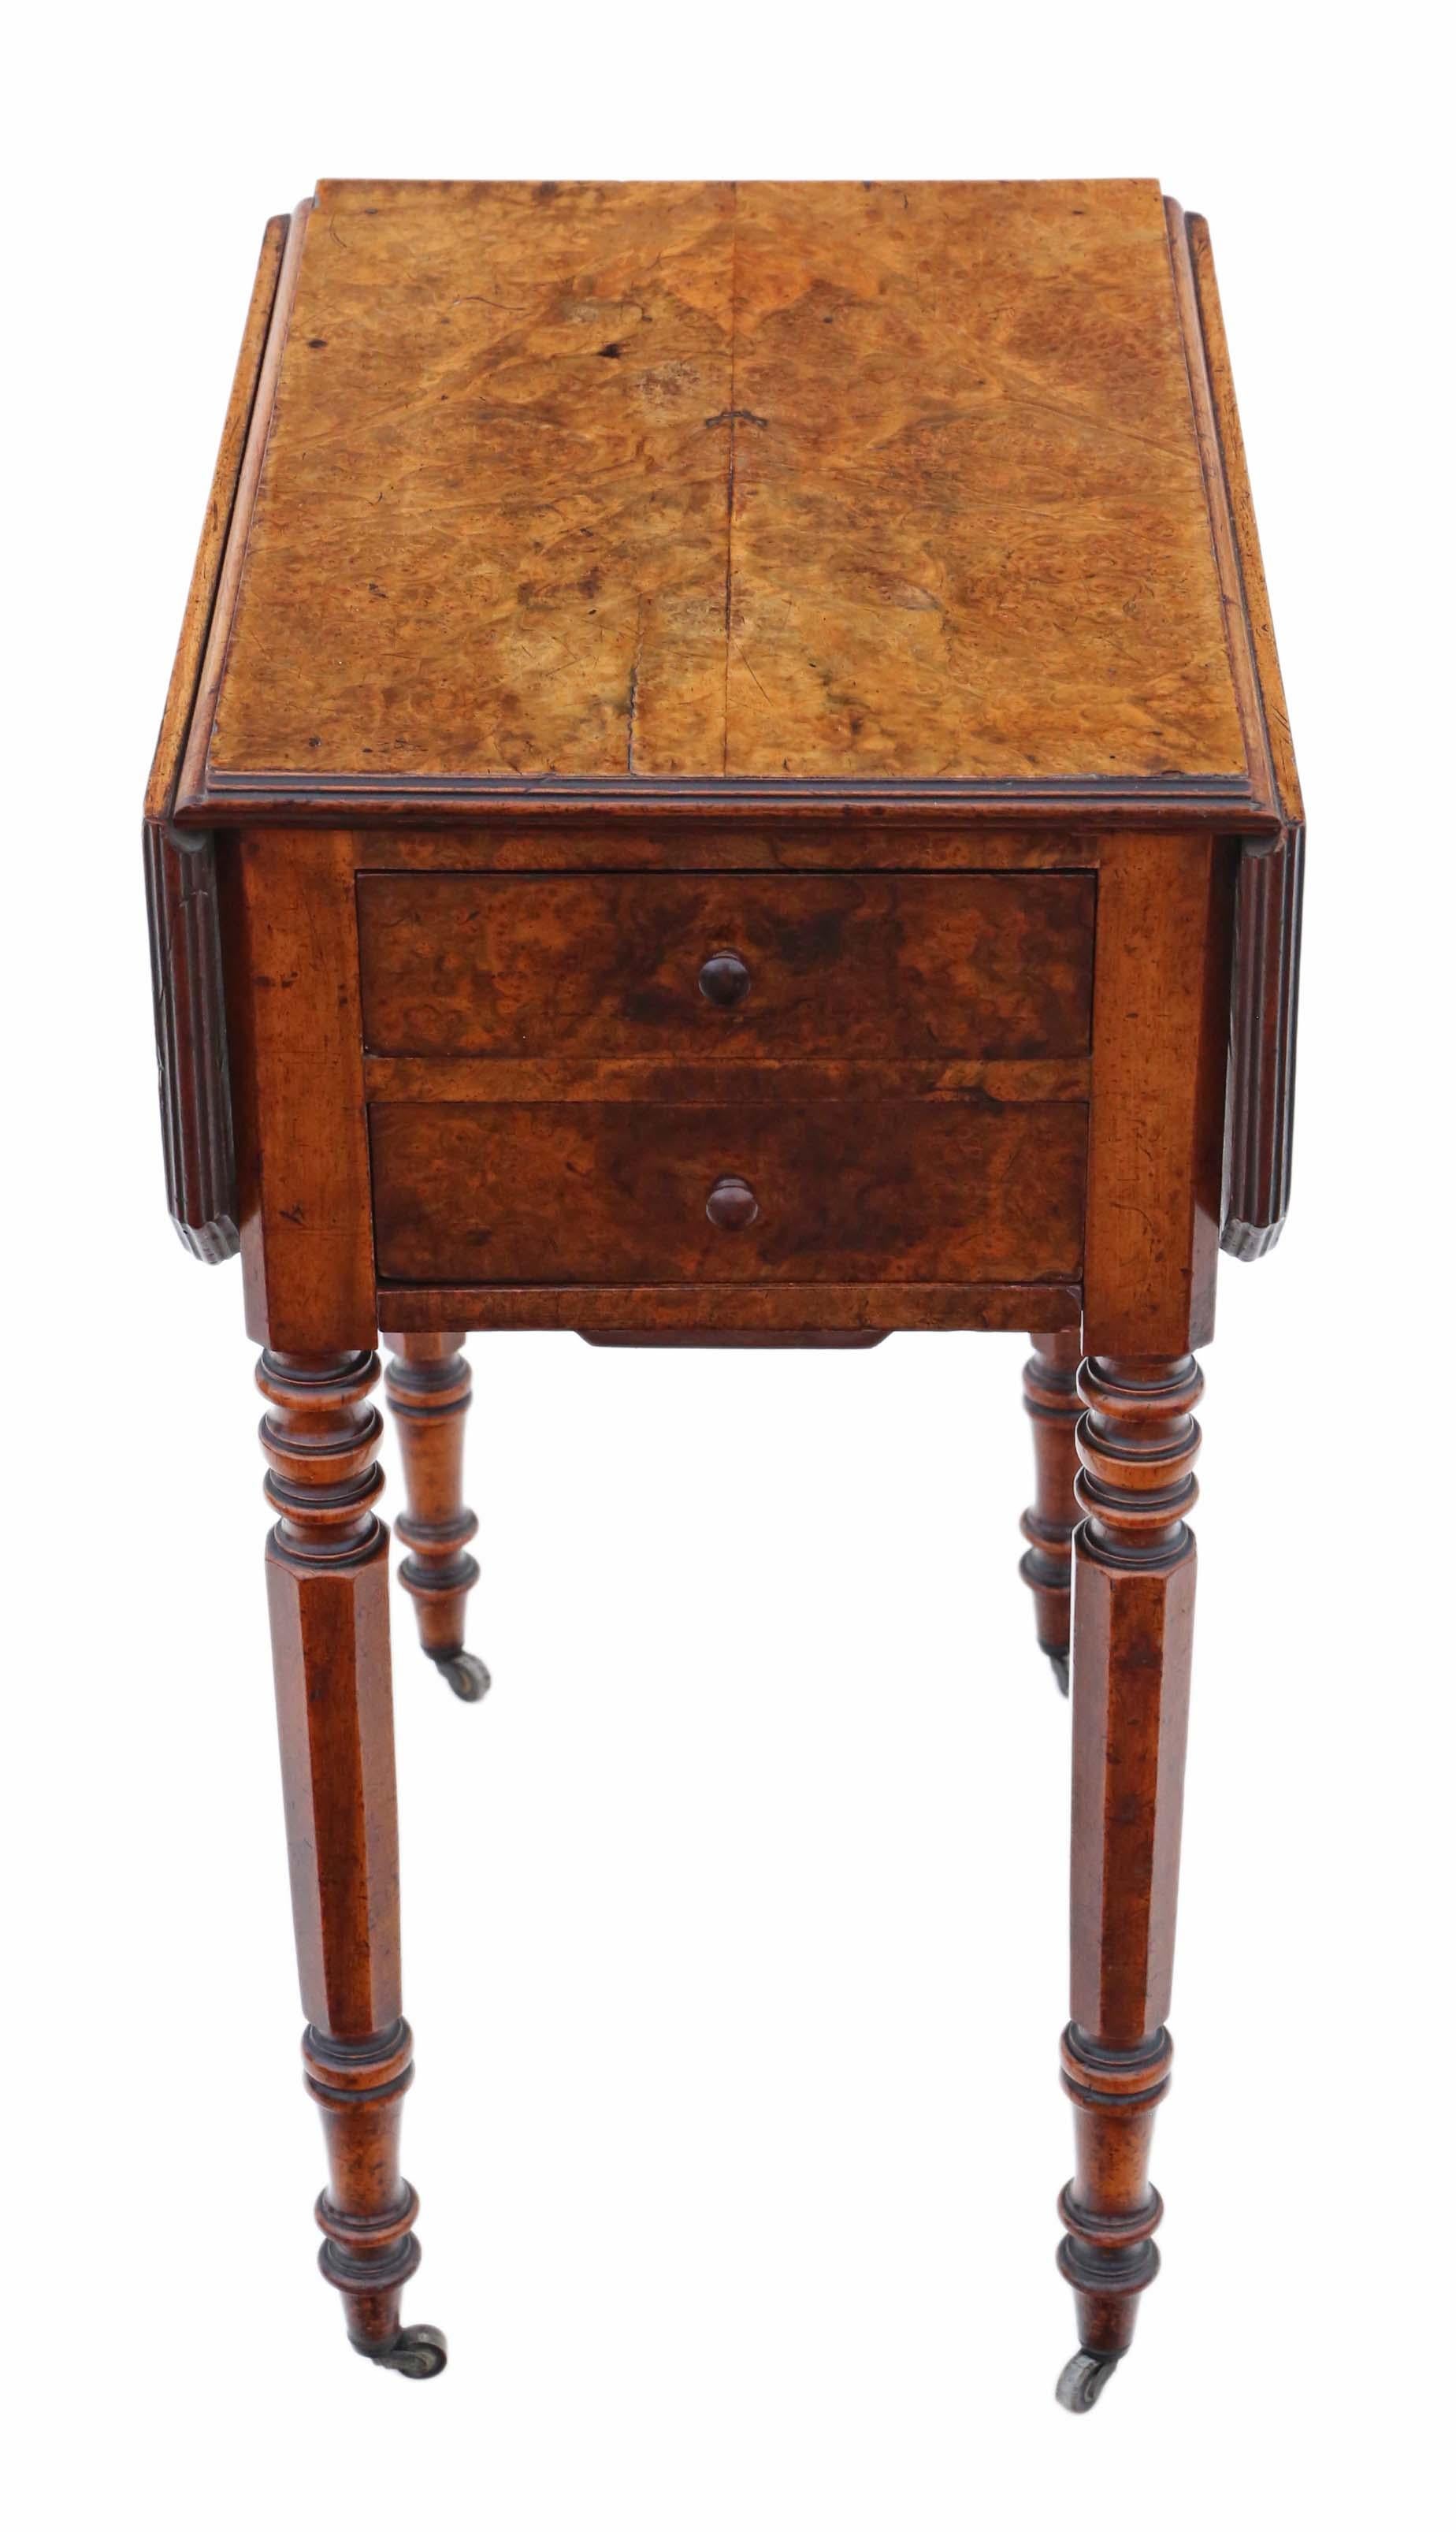 Antike feine Qualität viktorianischen 19. Jahrhundert C1880 Grat Nussbaum Drop Blatt Arbeitstisch.

Zwei Schubladen auf jeder Seite und ein Nähfach, die alle frei verschiebbar sind. Schöne achteckige Beine Abschluss in der Zeit Rollen.

Keine